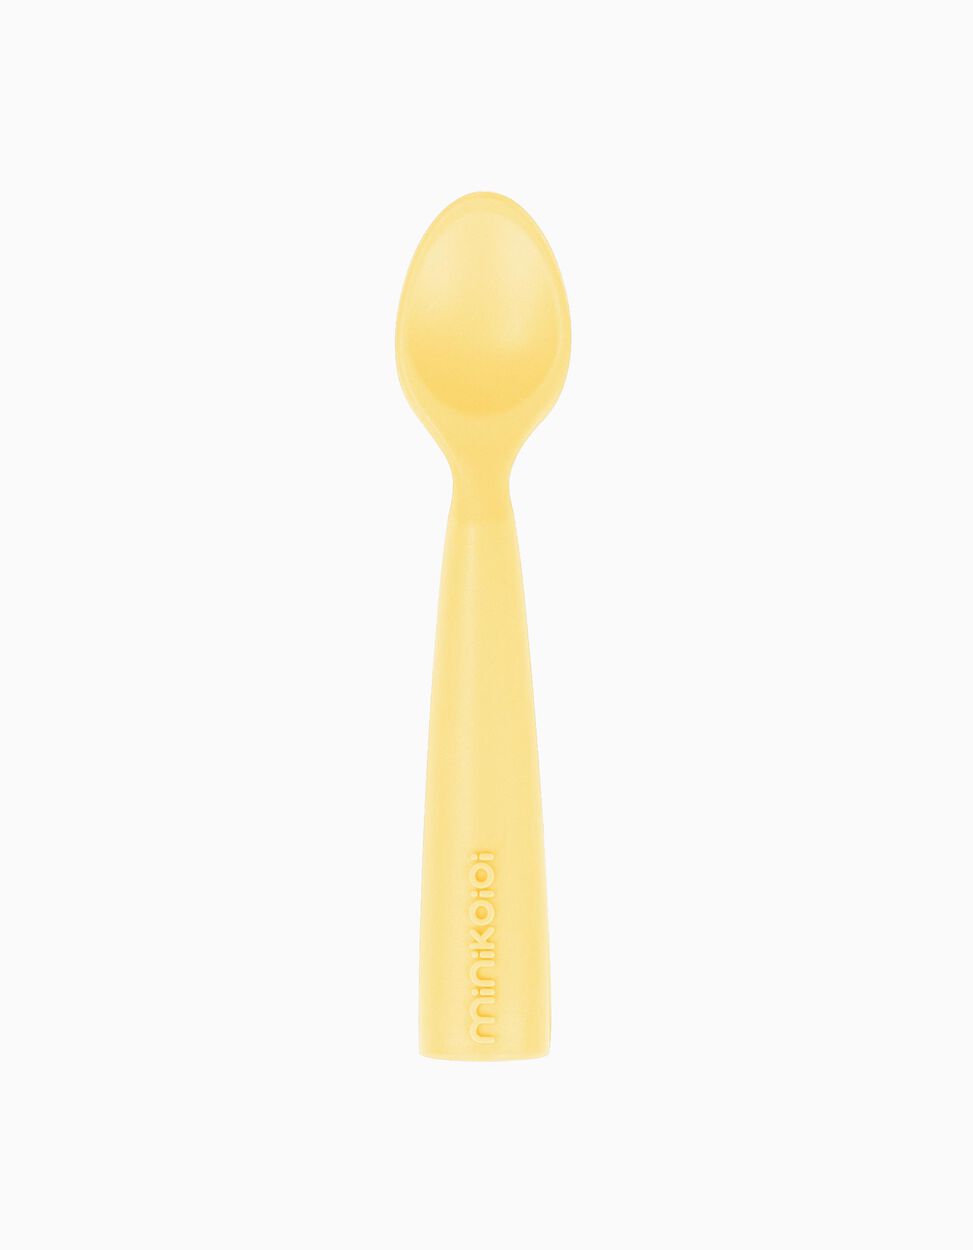 Silicone Spoon Minikoioi Spoon Woody Yellow 6M+